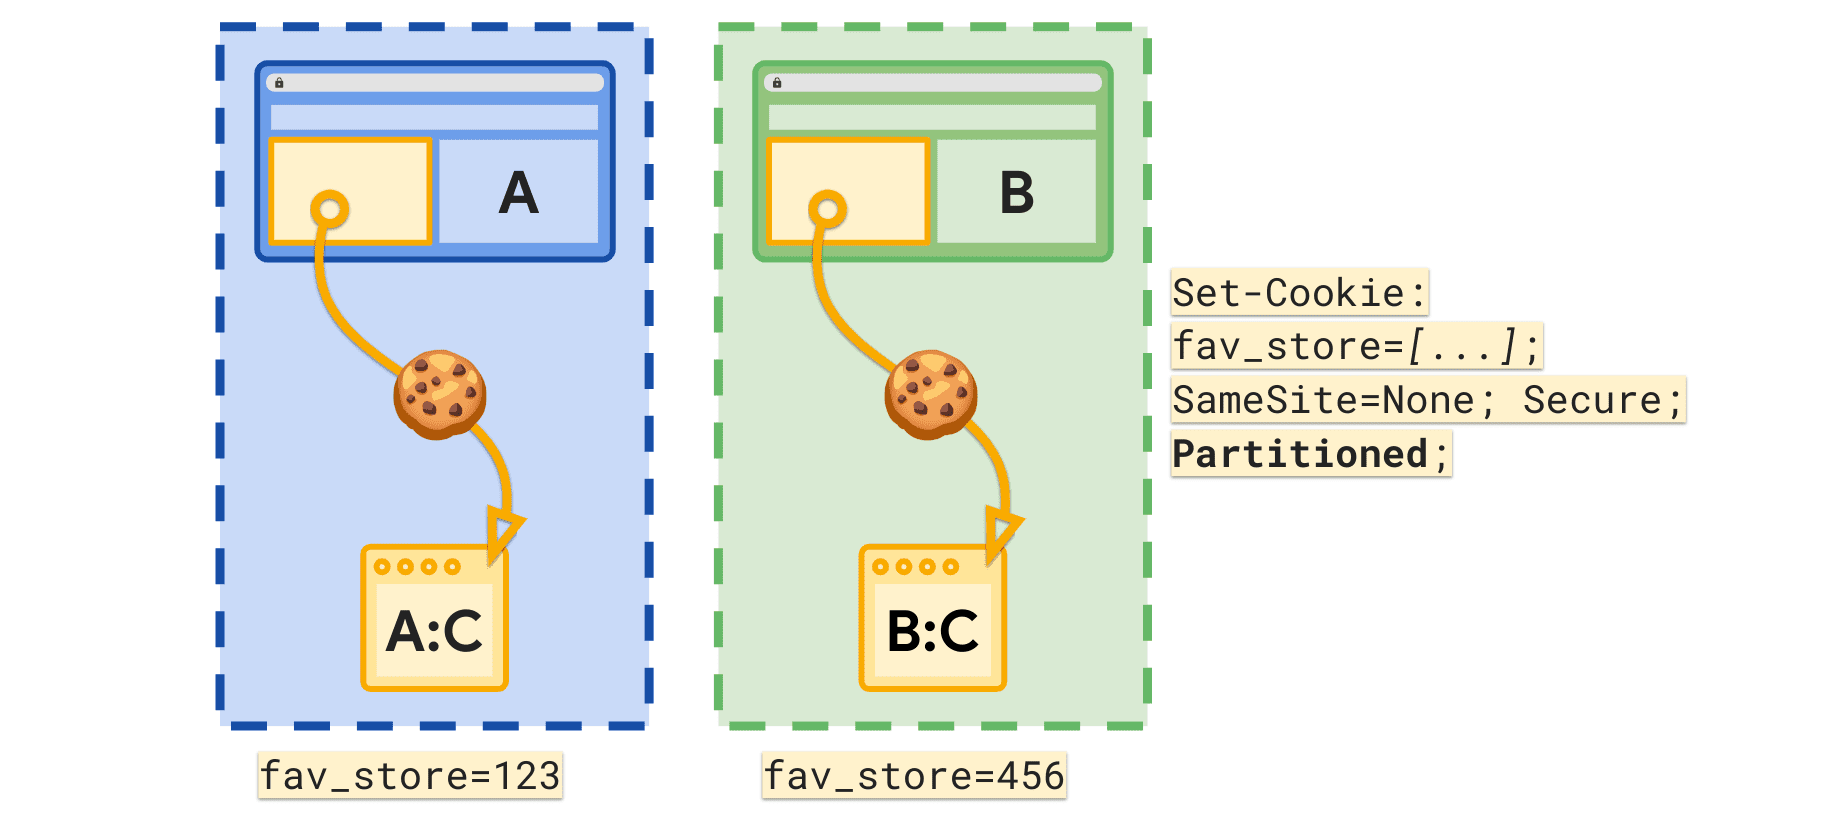 O atributo Partitioned permite que um cookie fav_store separado seja definido por site de nível superior.